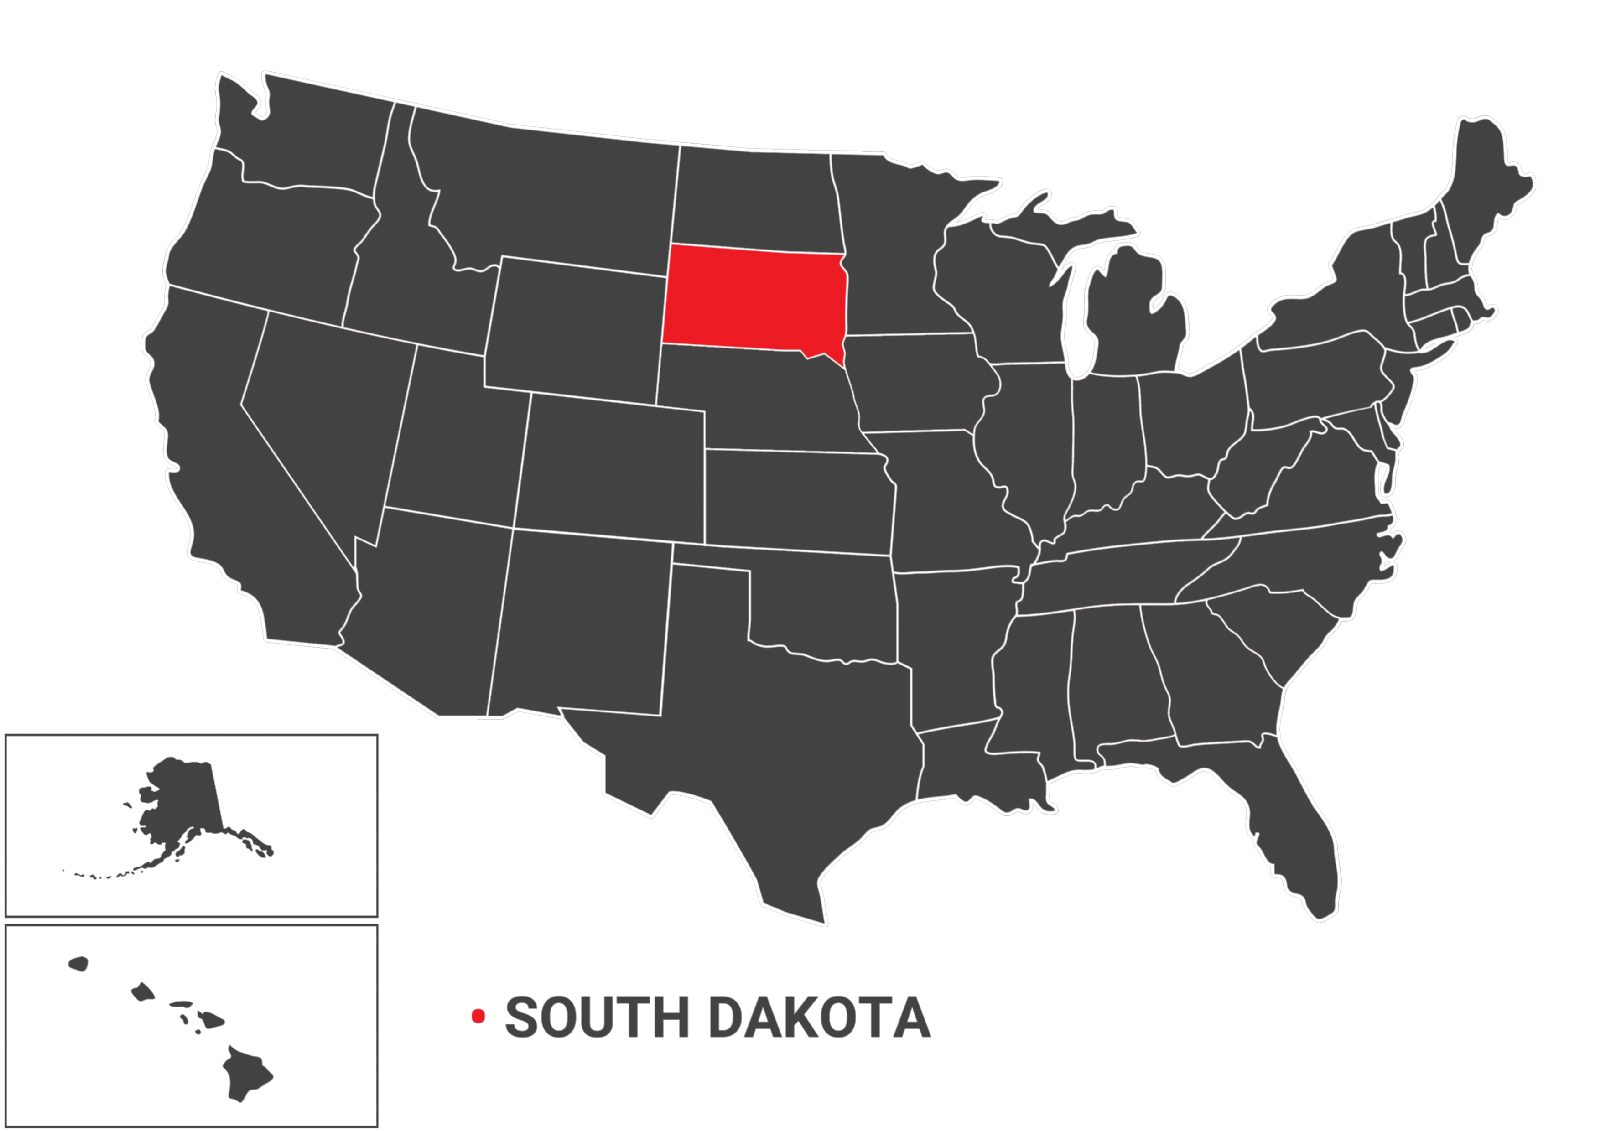 نقشه جغرافیایی ایالت south dakota